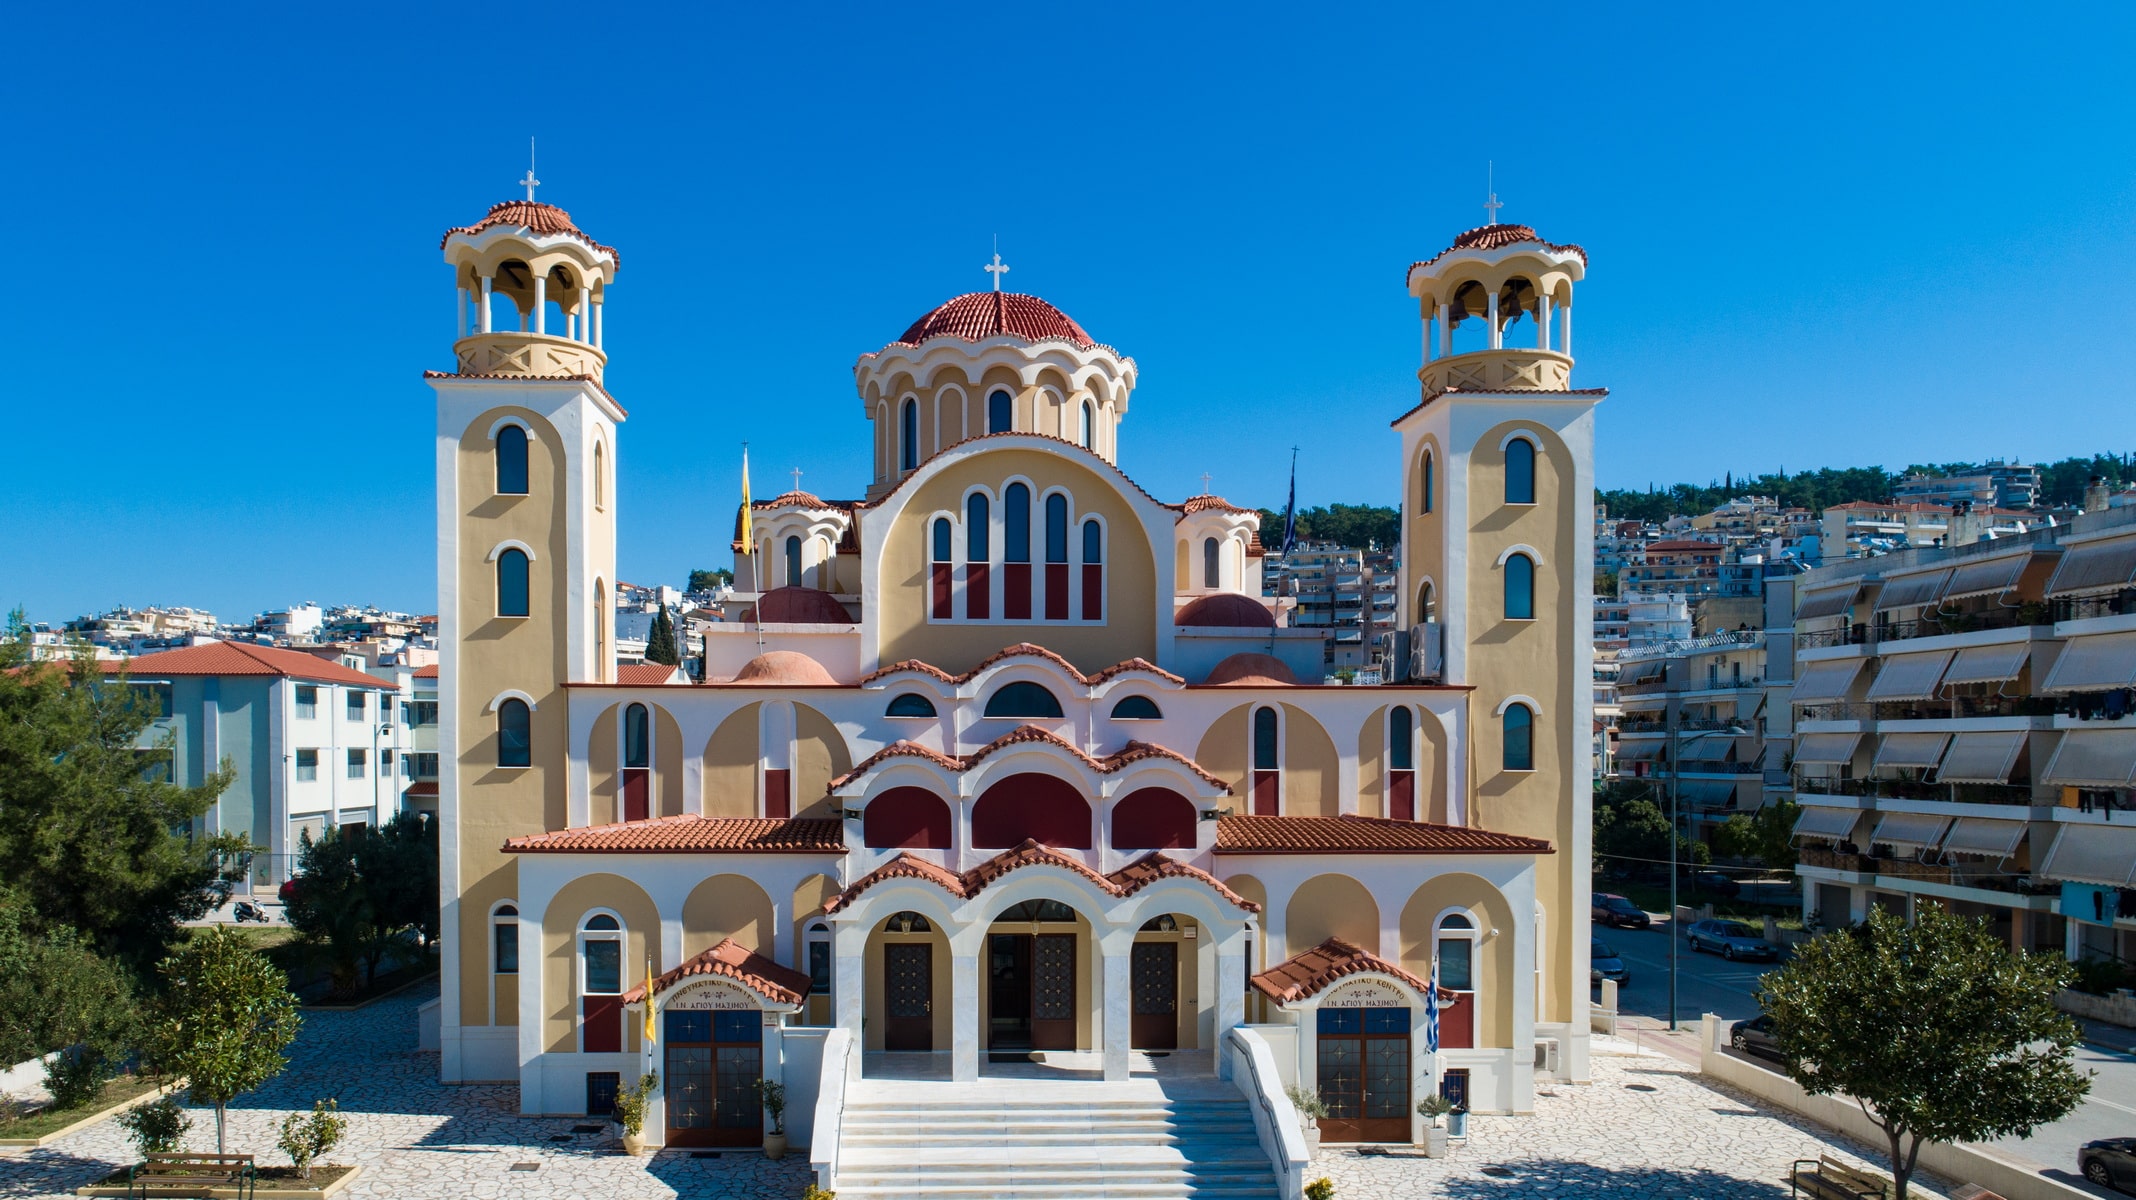 Church of Aghios Maximos ‘the Greek’